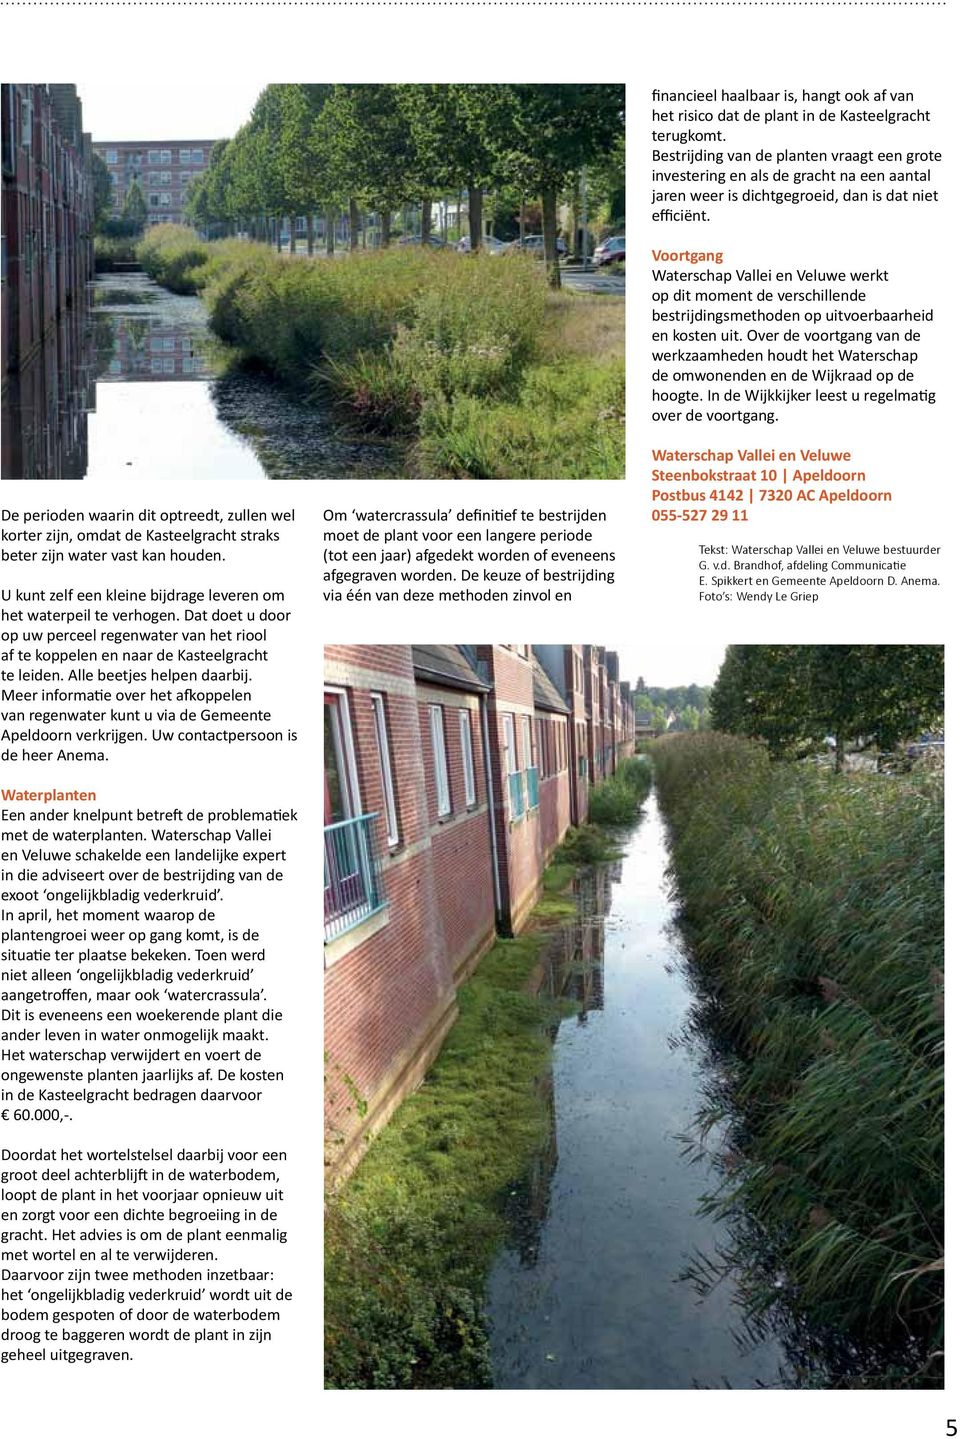 Meer informatie over het afkoppelen van regenwater kunt u via de Gemeente Apeldoorn verkrijgen. Uw contactpersoon is de heer Anema.